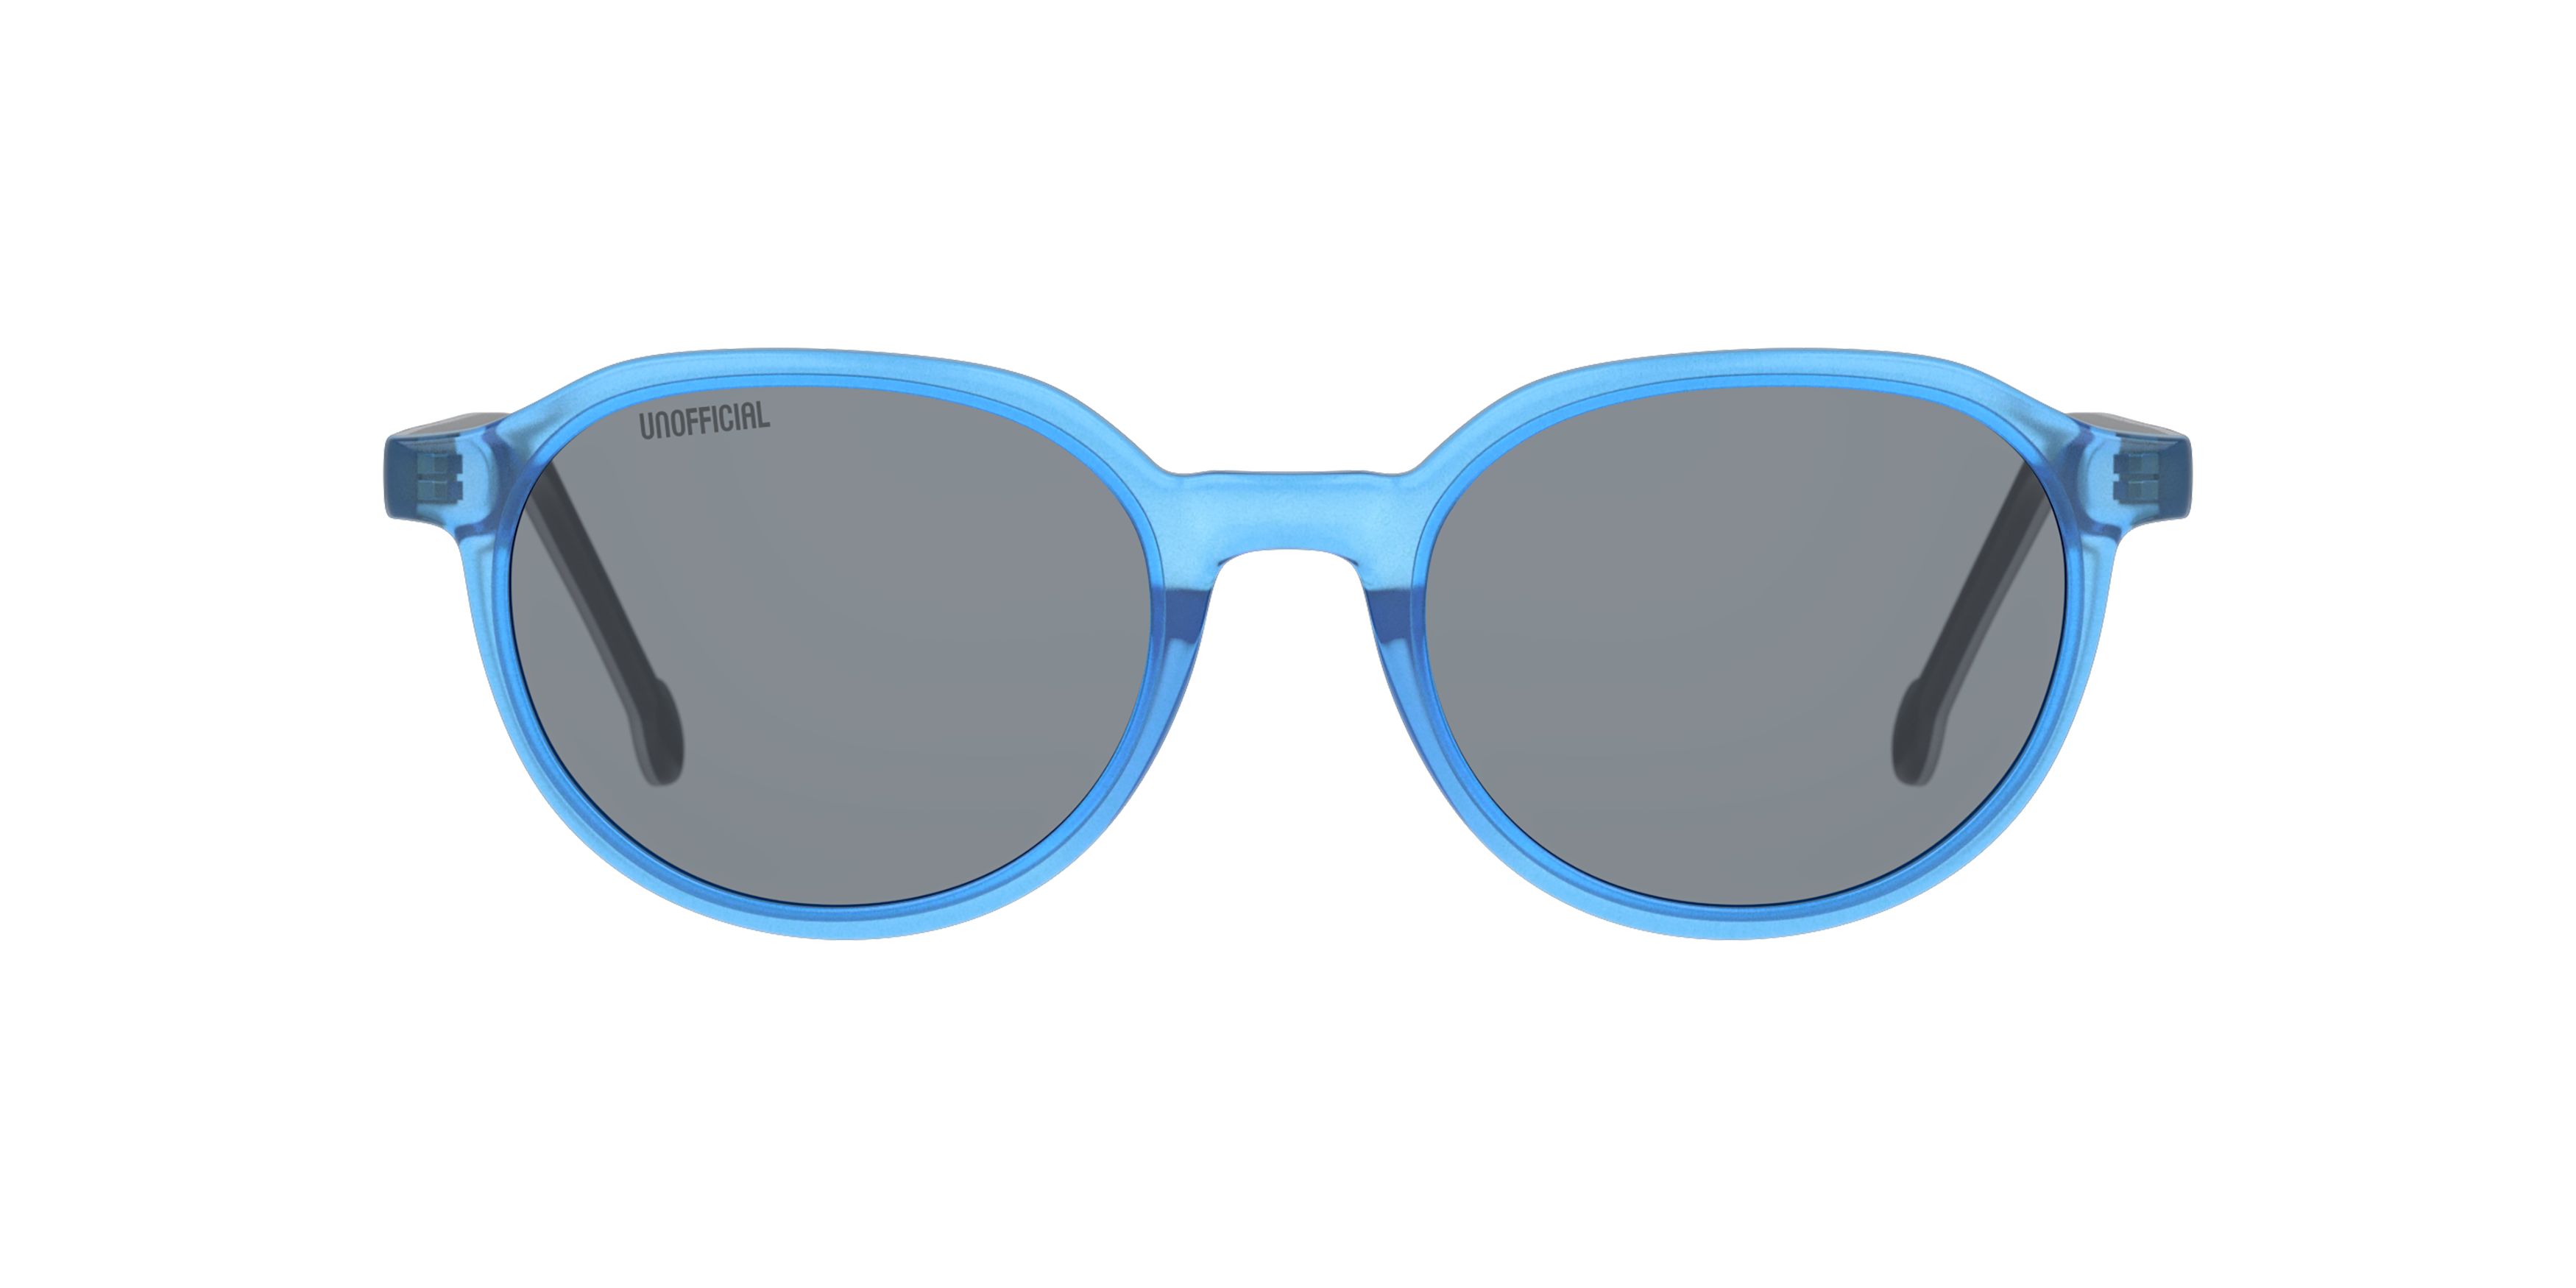 Front Unofficial UNSK0039 Children's Sunglasses Grey / Transparent, Blue